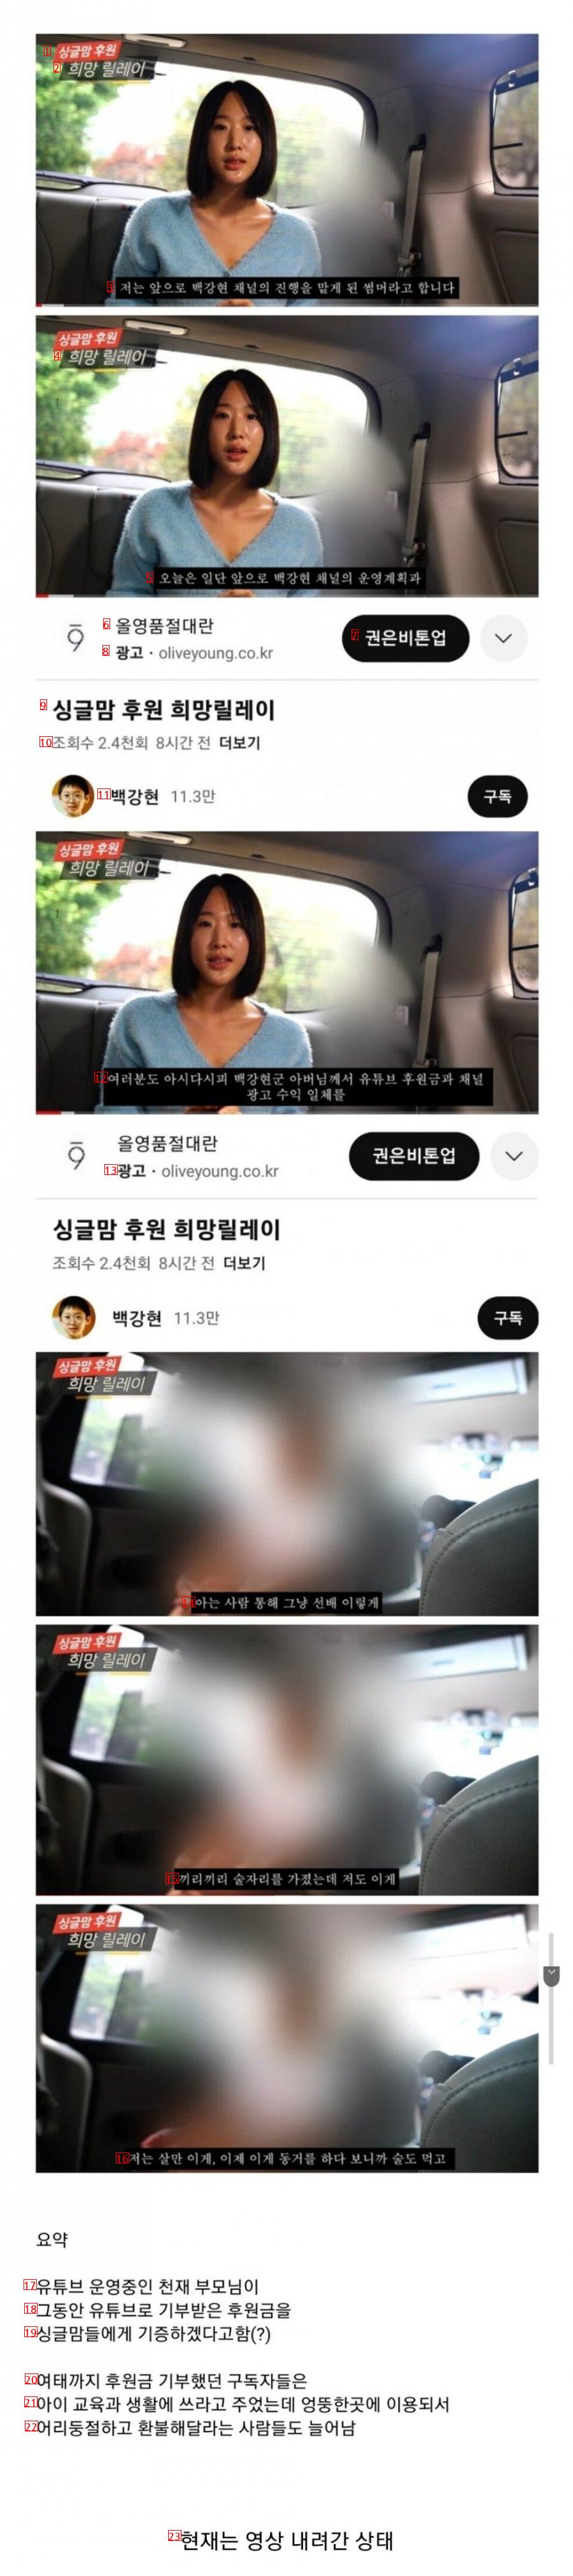 서울과학고 백강현군 유튜브 채널 근황..jpg